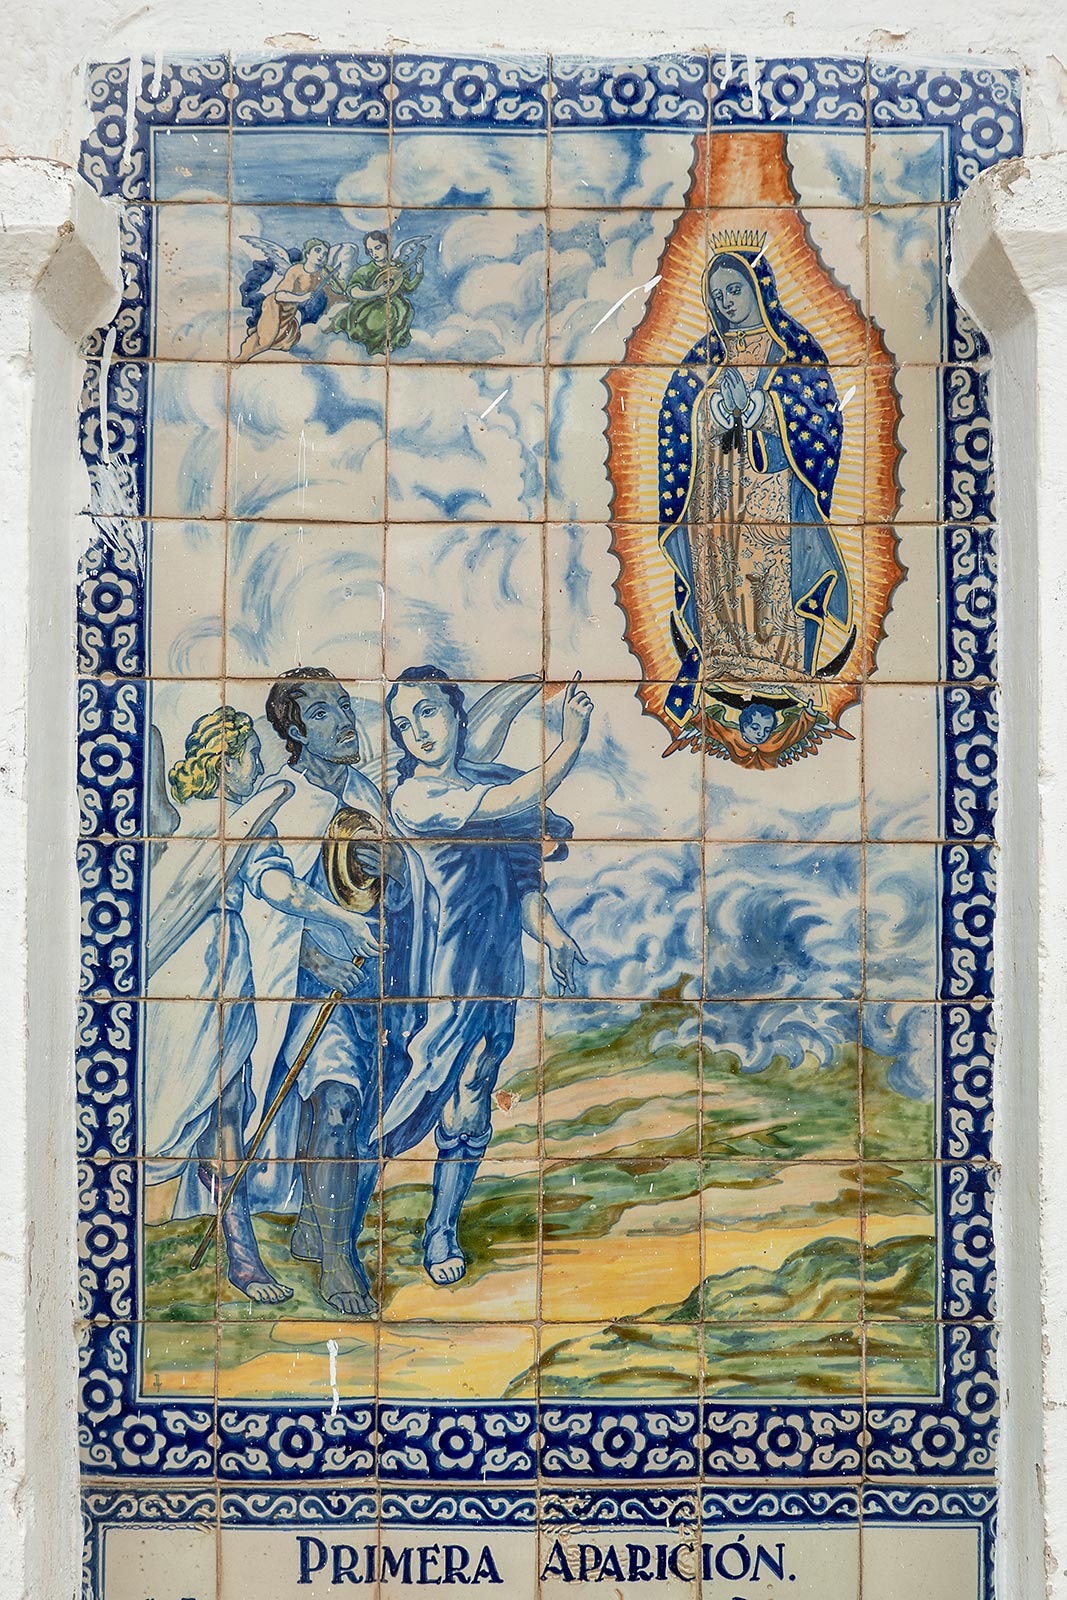 Afbeelding geschilderd op tegels van de eerste verschijning van de Maagd Maria aan Juan Diego, Santuario del Señor del Sacromonte Amecameca